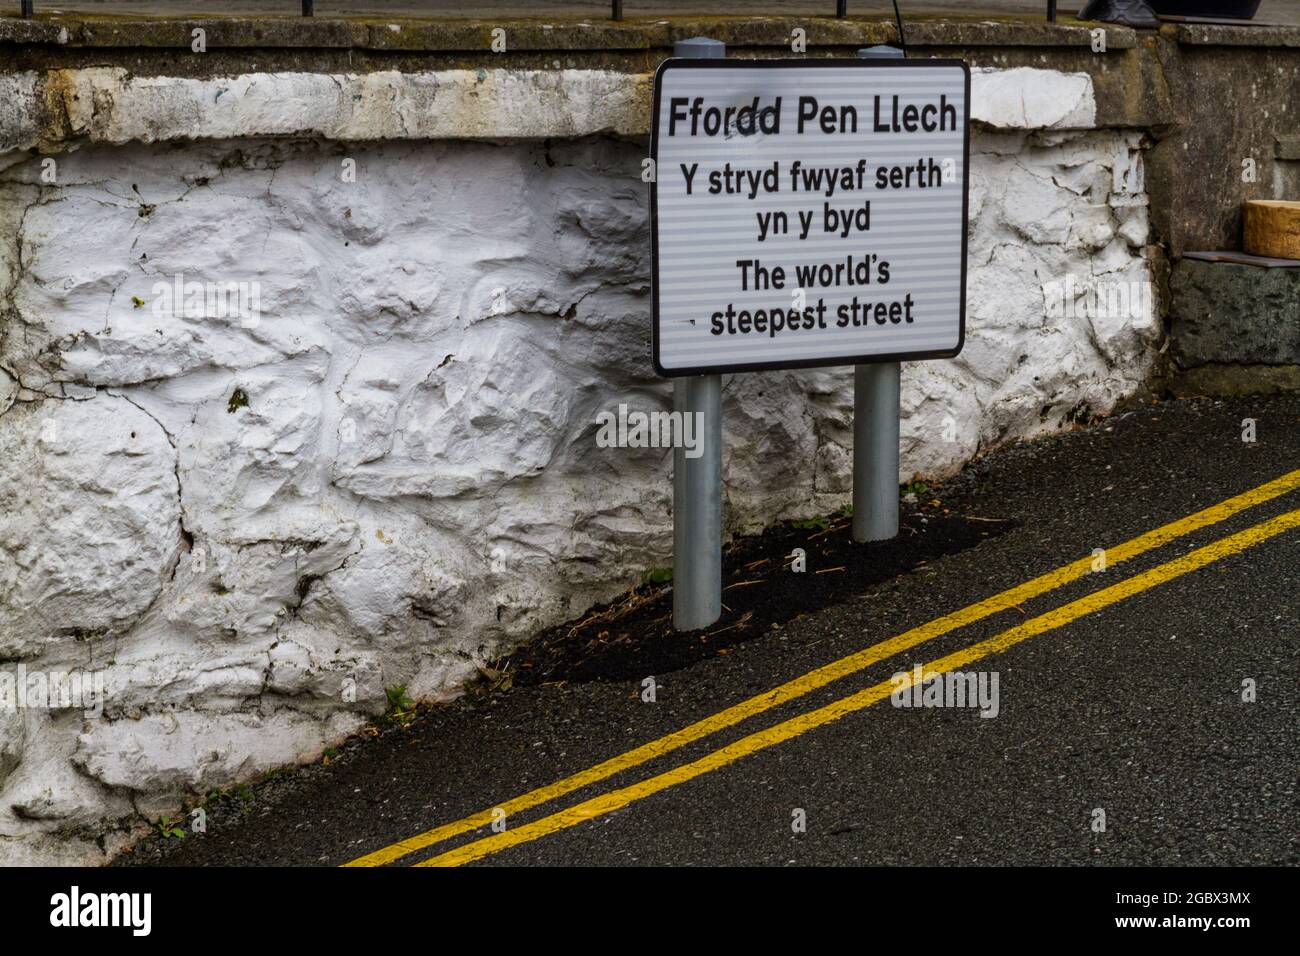 harlech, wales – octubre 5 2020: Señal para Ffordd Pen Llech, ahora la segunda calle más empinada del mundo. Barmouth, Gwynedd, Gales del Norte, Reino Unido, paisaje Foto de stock